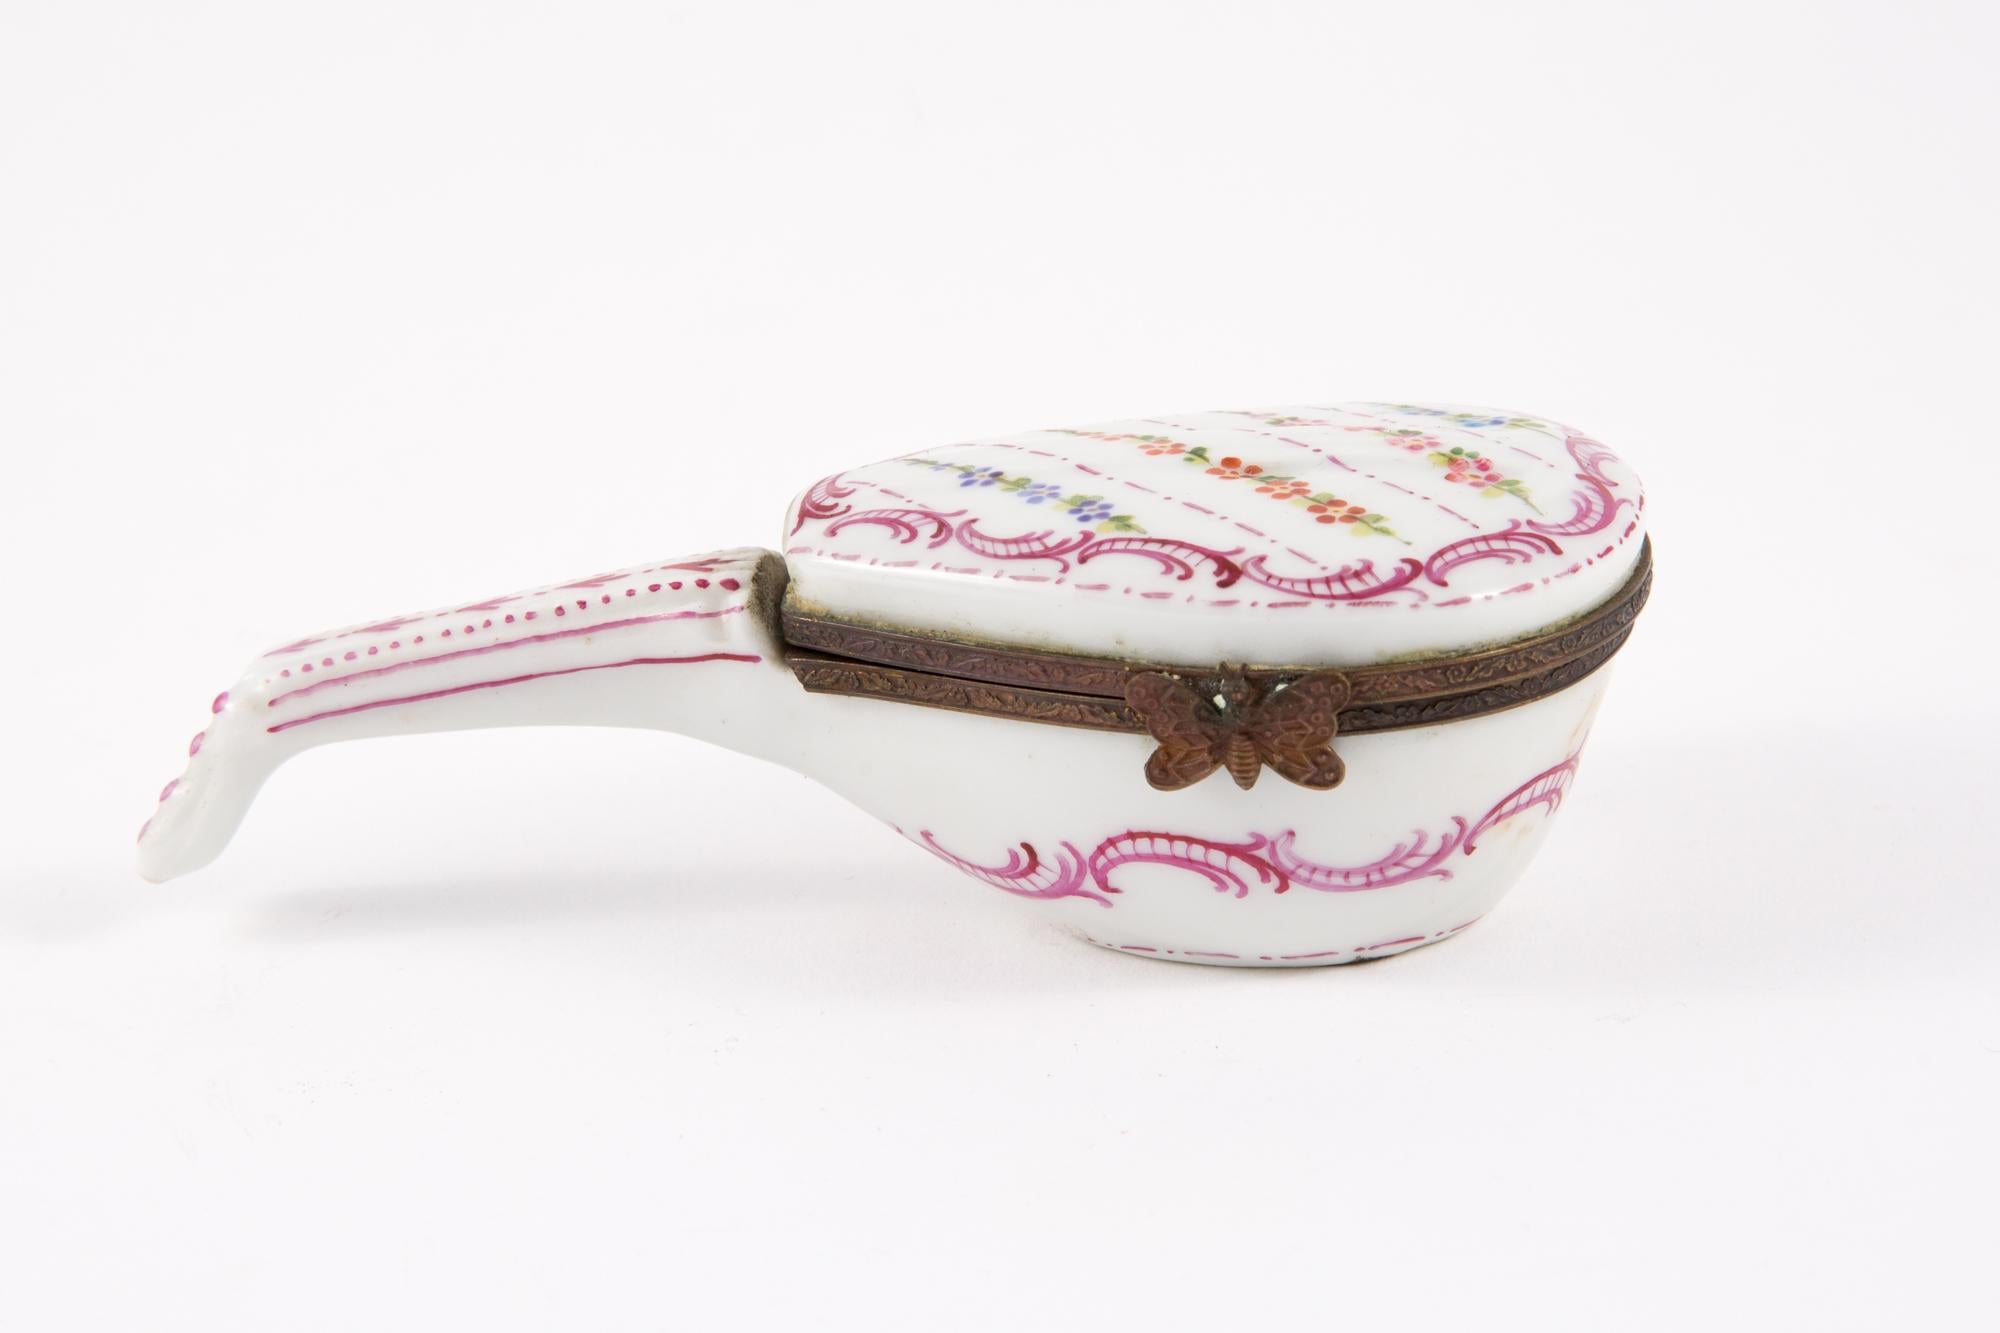 Boîte à pilules pour mandoline en porcelaine avec cadre métallique, fermoir papillon et décor floral polychrome.
En bon état vintage. Fabriqué en France. 
Hauteur 4 cm (1,5 po)
Longueur 14 cm (5,5 pouces)
Largeur 6 cm (2,3 pouces)
Nous garantissons